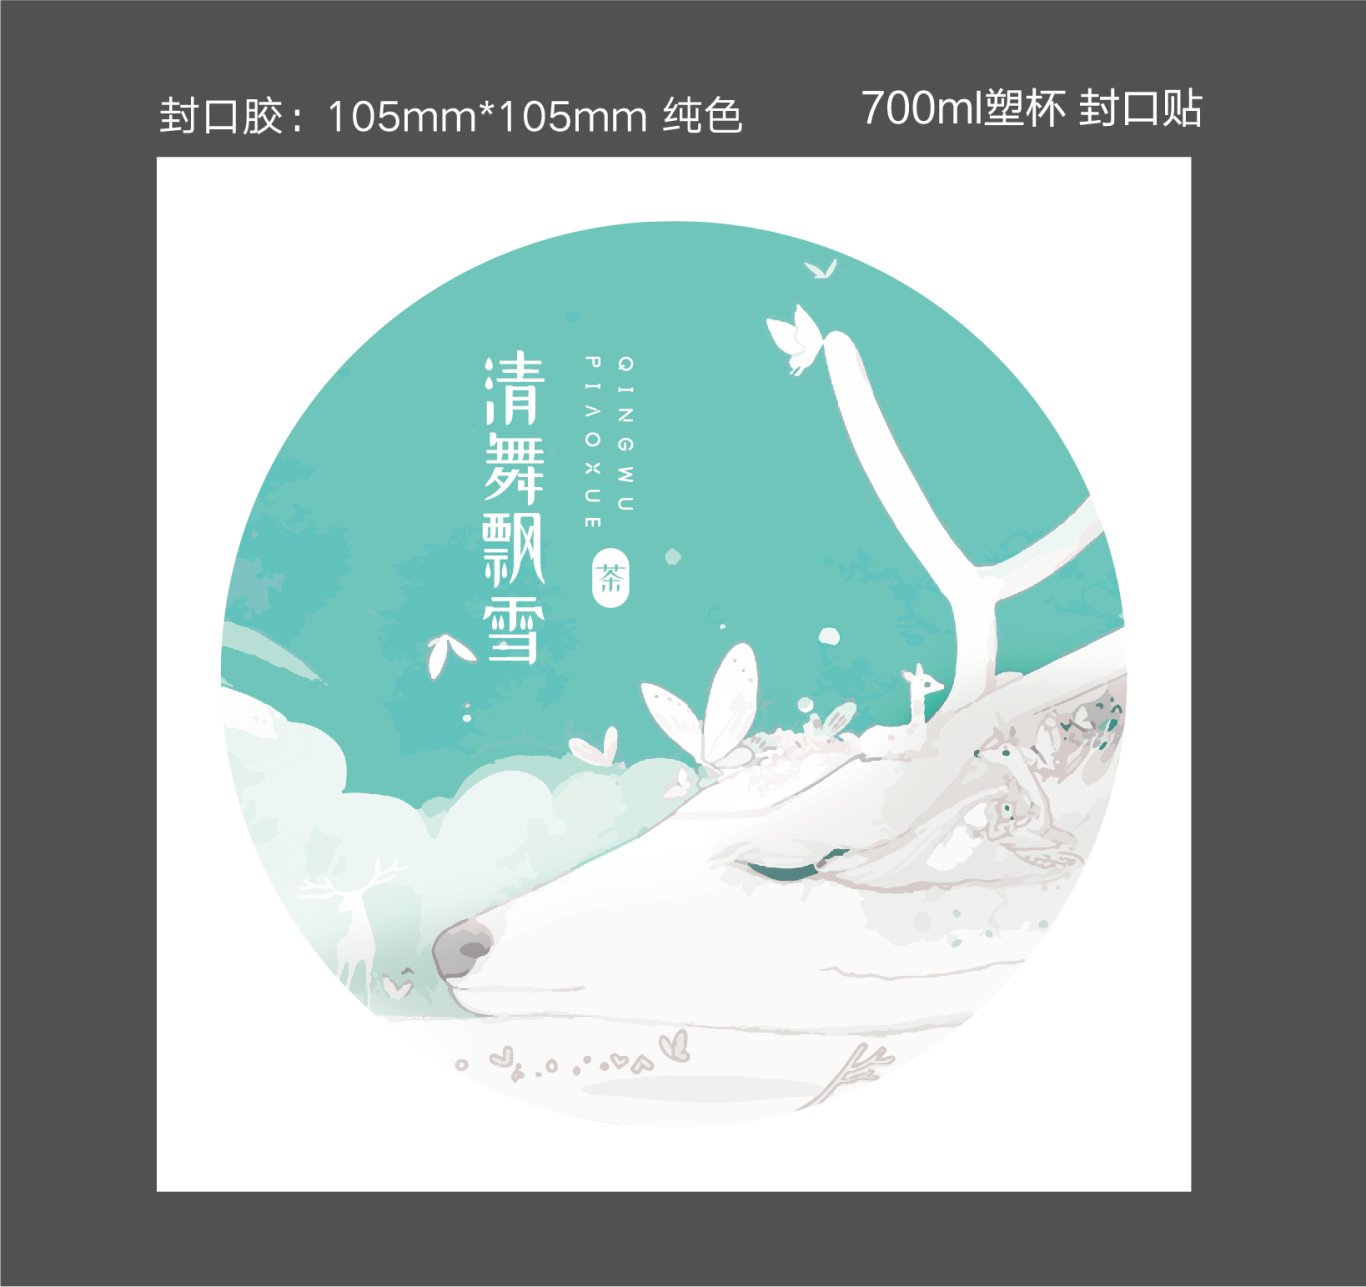 清舞飘雪茶饮 logo设计及吉祥物设计图12